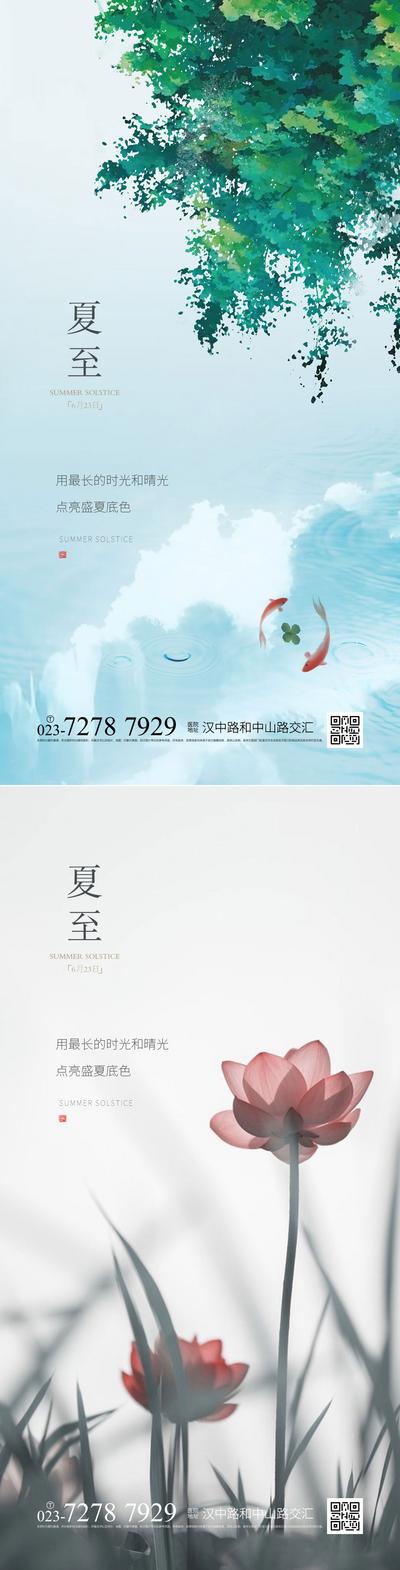 南门网 广告 海报 节气 夏至 清新 系列 品质